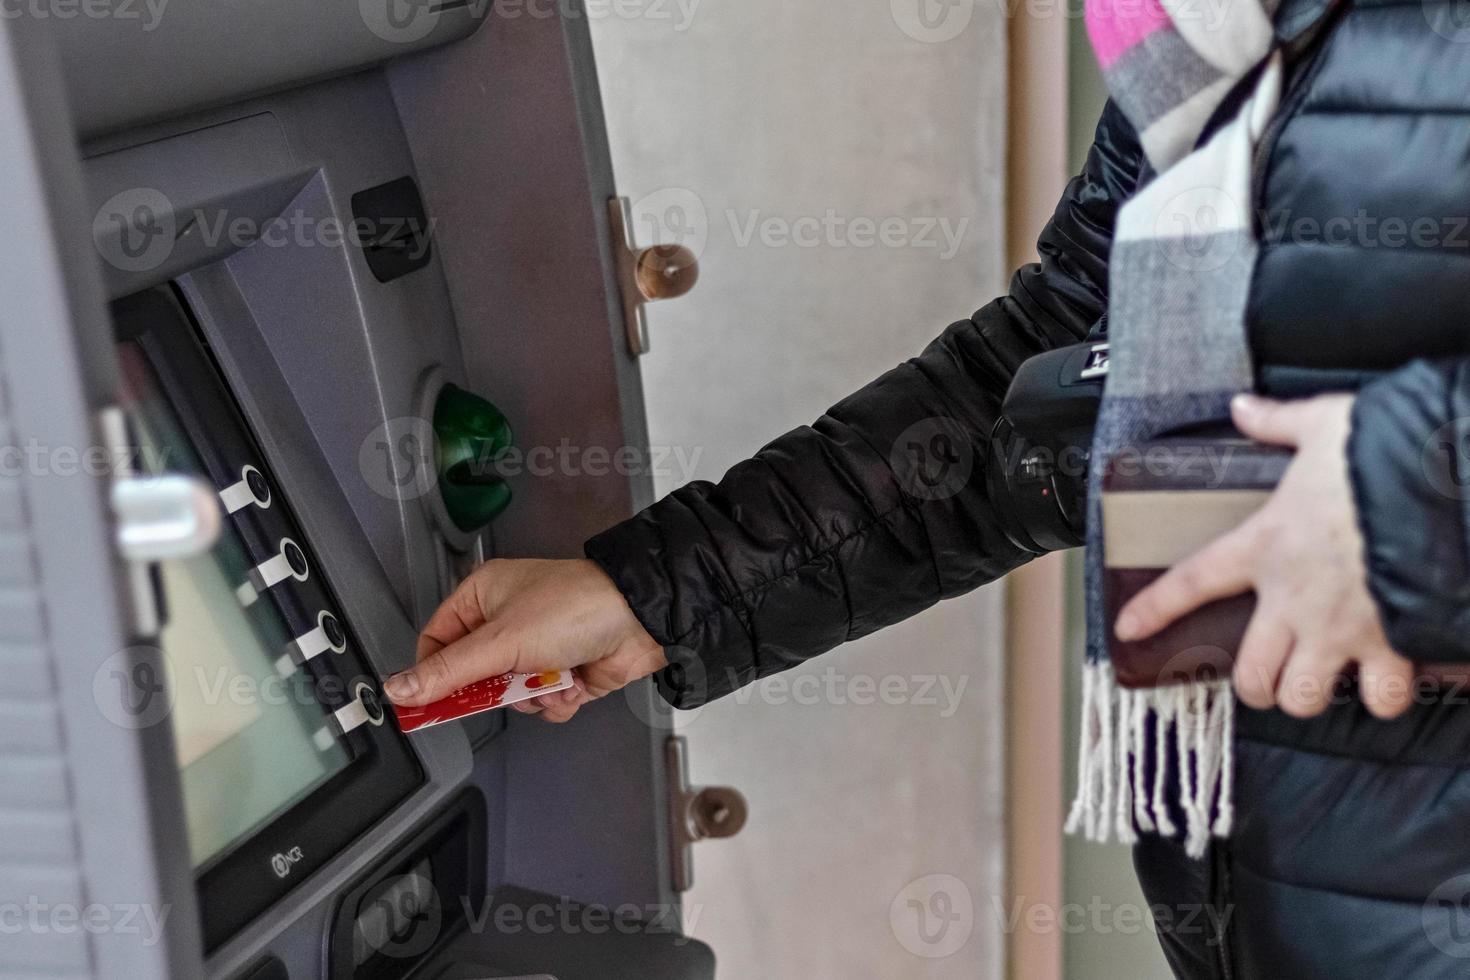 vrouwelijke handen houden een plastic bankcreditcard vast, gebruiken een geldautomaat foto